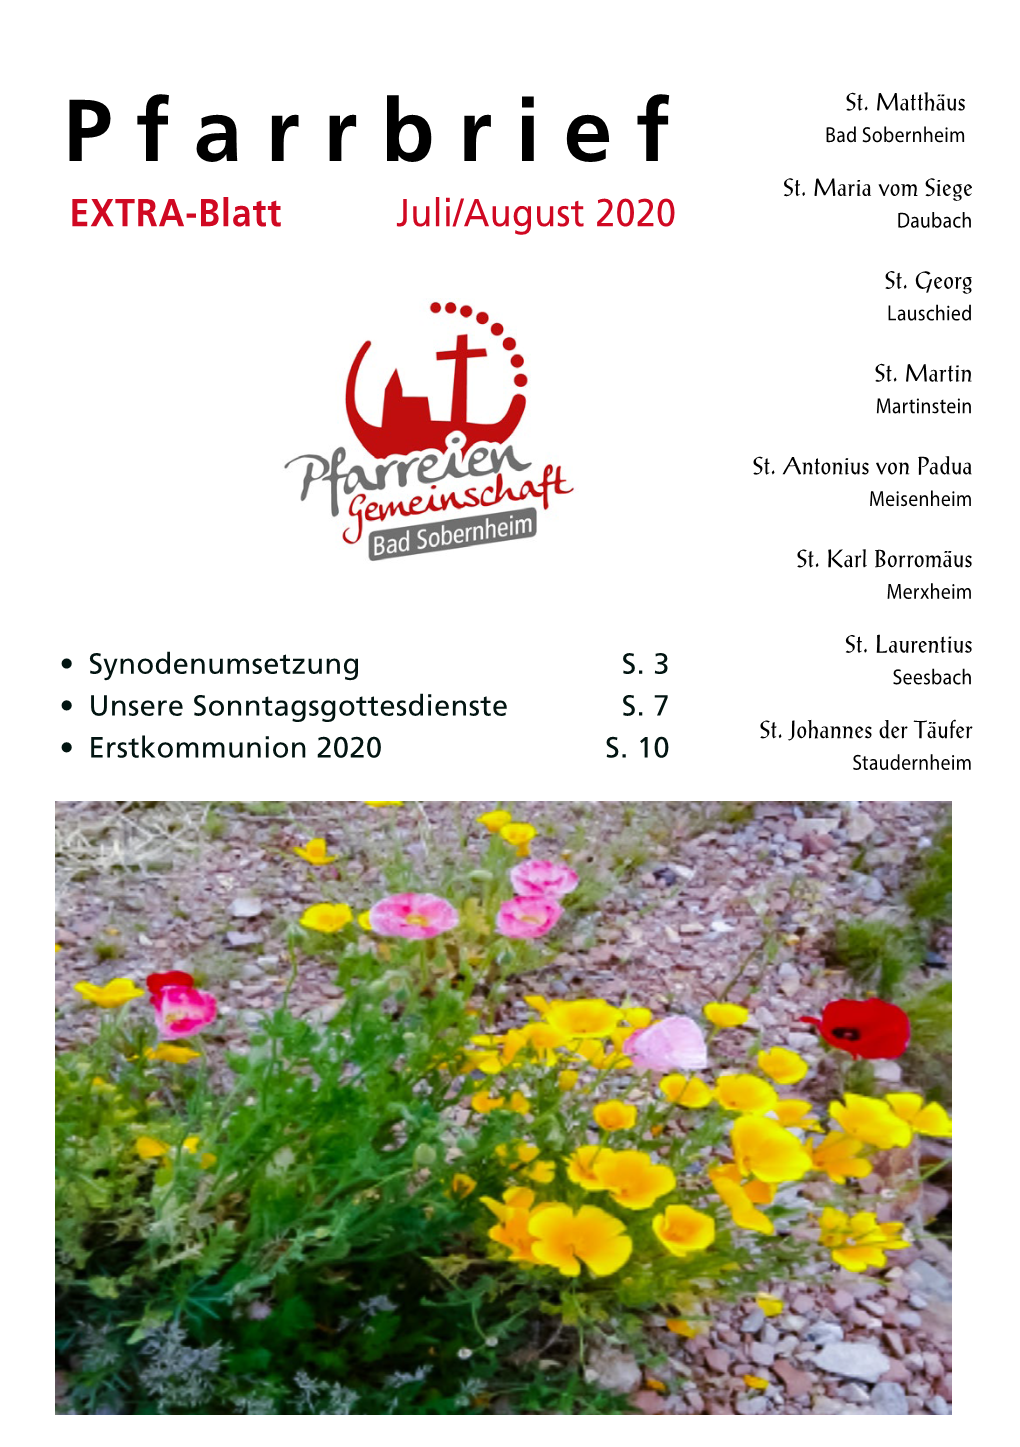 EXTRA-Blatt Juli/August 2020 Daubach